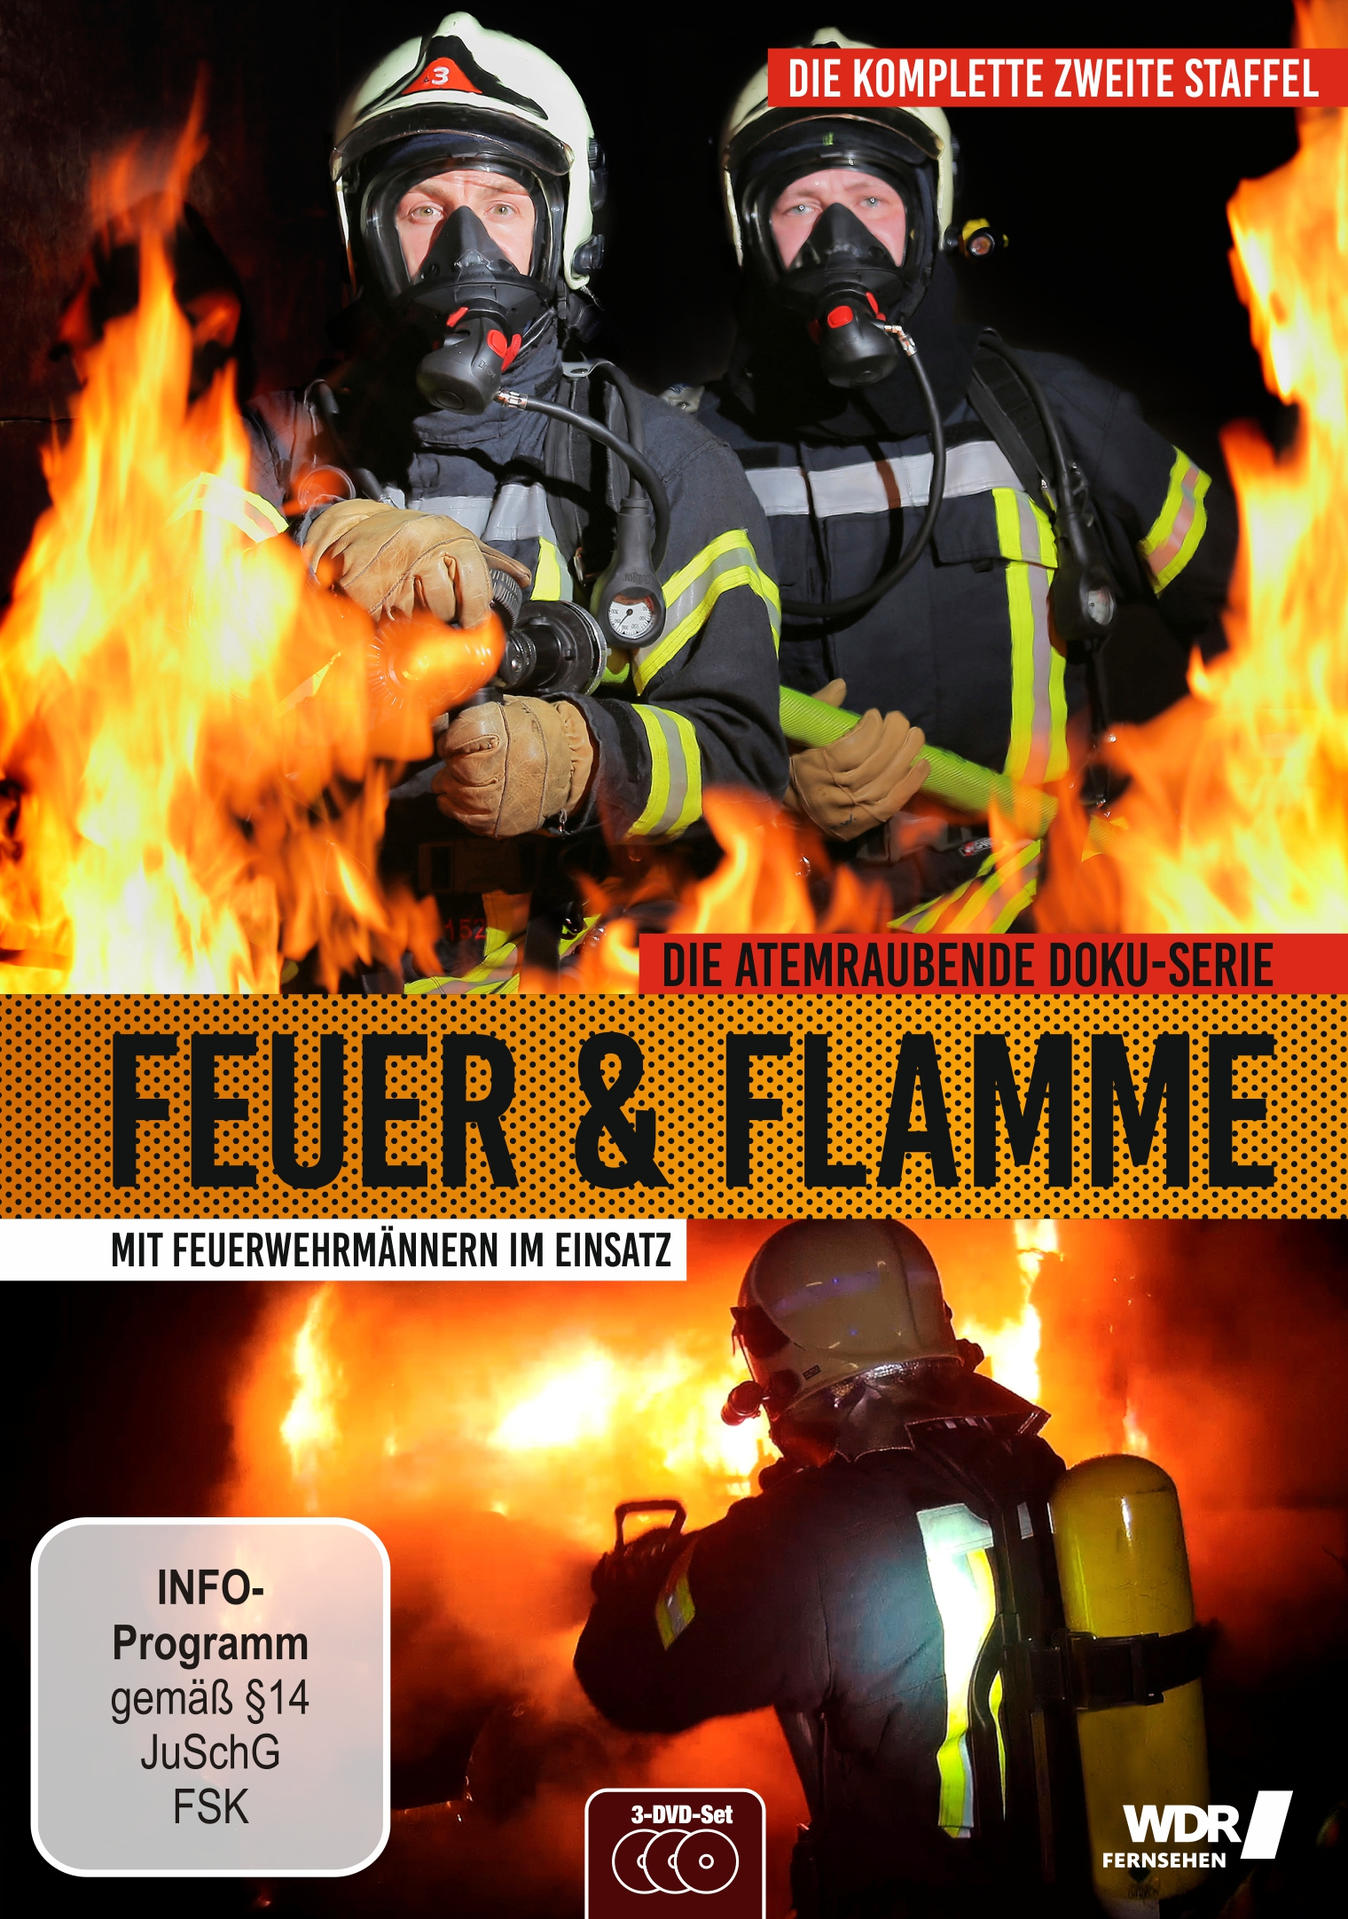 Feuer und Flamme - Einsatz Feuerwehrmännern im Staffel DVD 2 - Mit